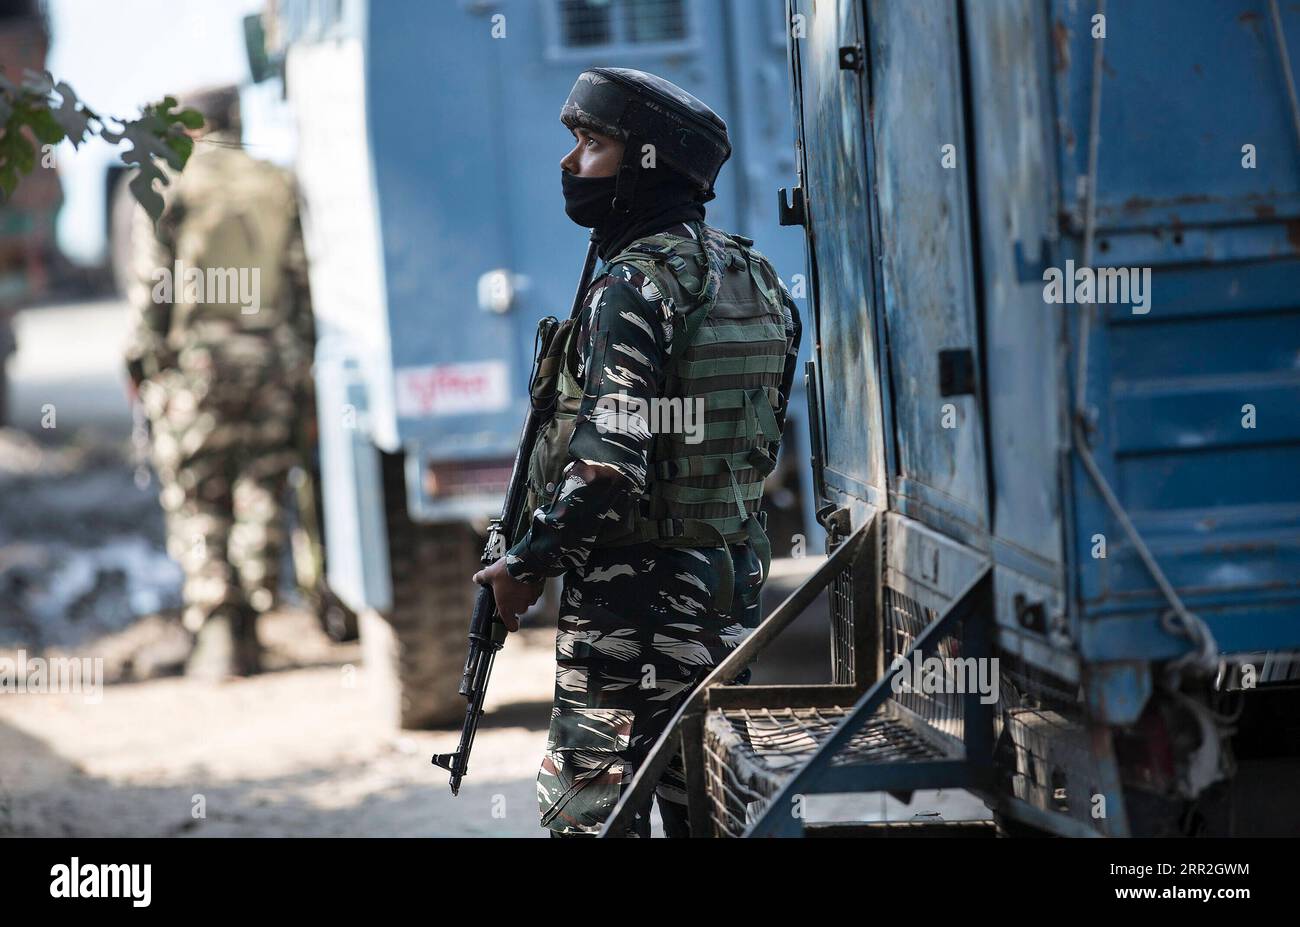 201012 -- SRINAGAR, 12 ottobre 2020 -- un gruppo paramilitare indiano si trova a guardia vicino al sito di uno scontro a fuoco nella città di Srinagar, la capitale estiva del Kashmir controllato dagli indiani, 12 ottobre 2020. Due militanti sono stati uccisi lunedì in uno scontro a fuoco con le forze governative nel Kashmir controllato dagli indiani, ha detto la polizia. KASHMIR-SRINAGAR-GUNFIGHT JavedxDar PUBLICATIONxNOTxINxCHN Foto Stock